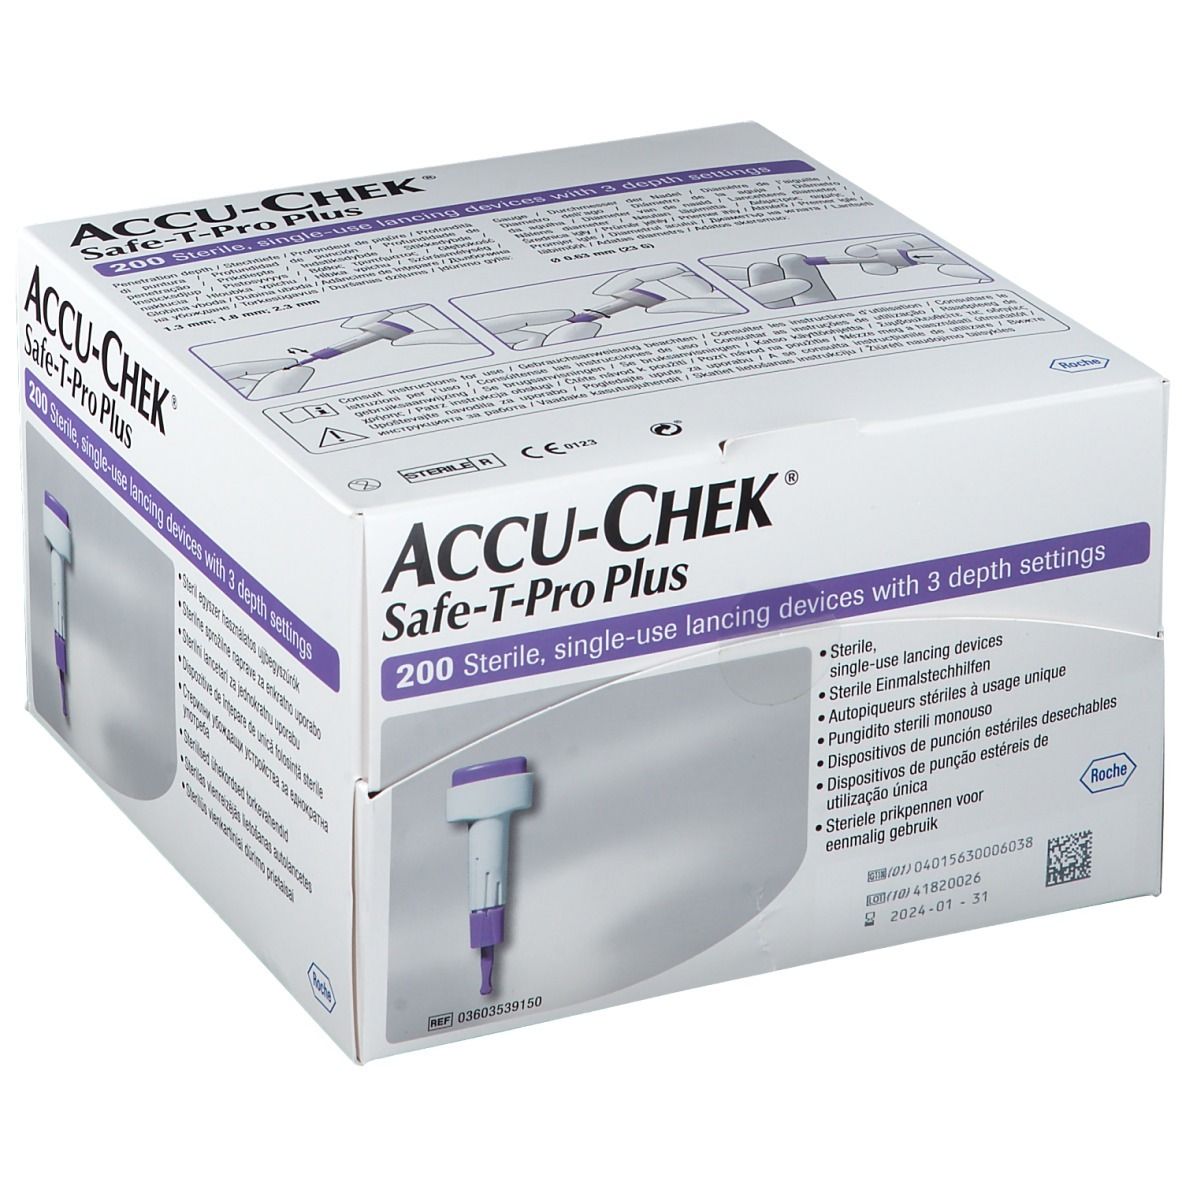 ACCU-CHEK® Safe T Pro Plus Usage unique